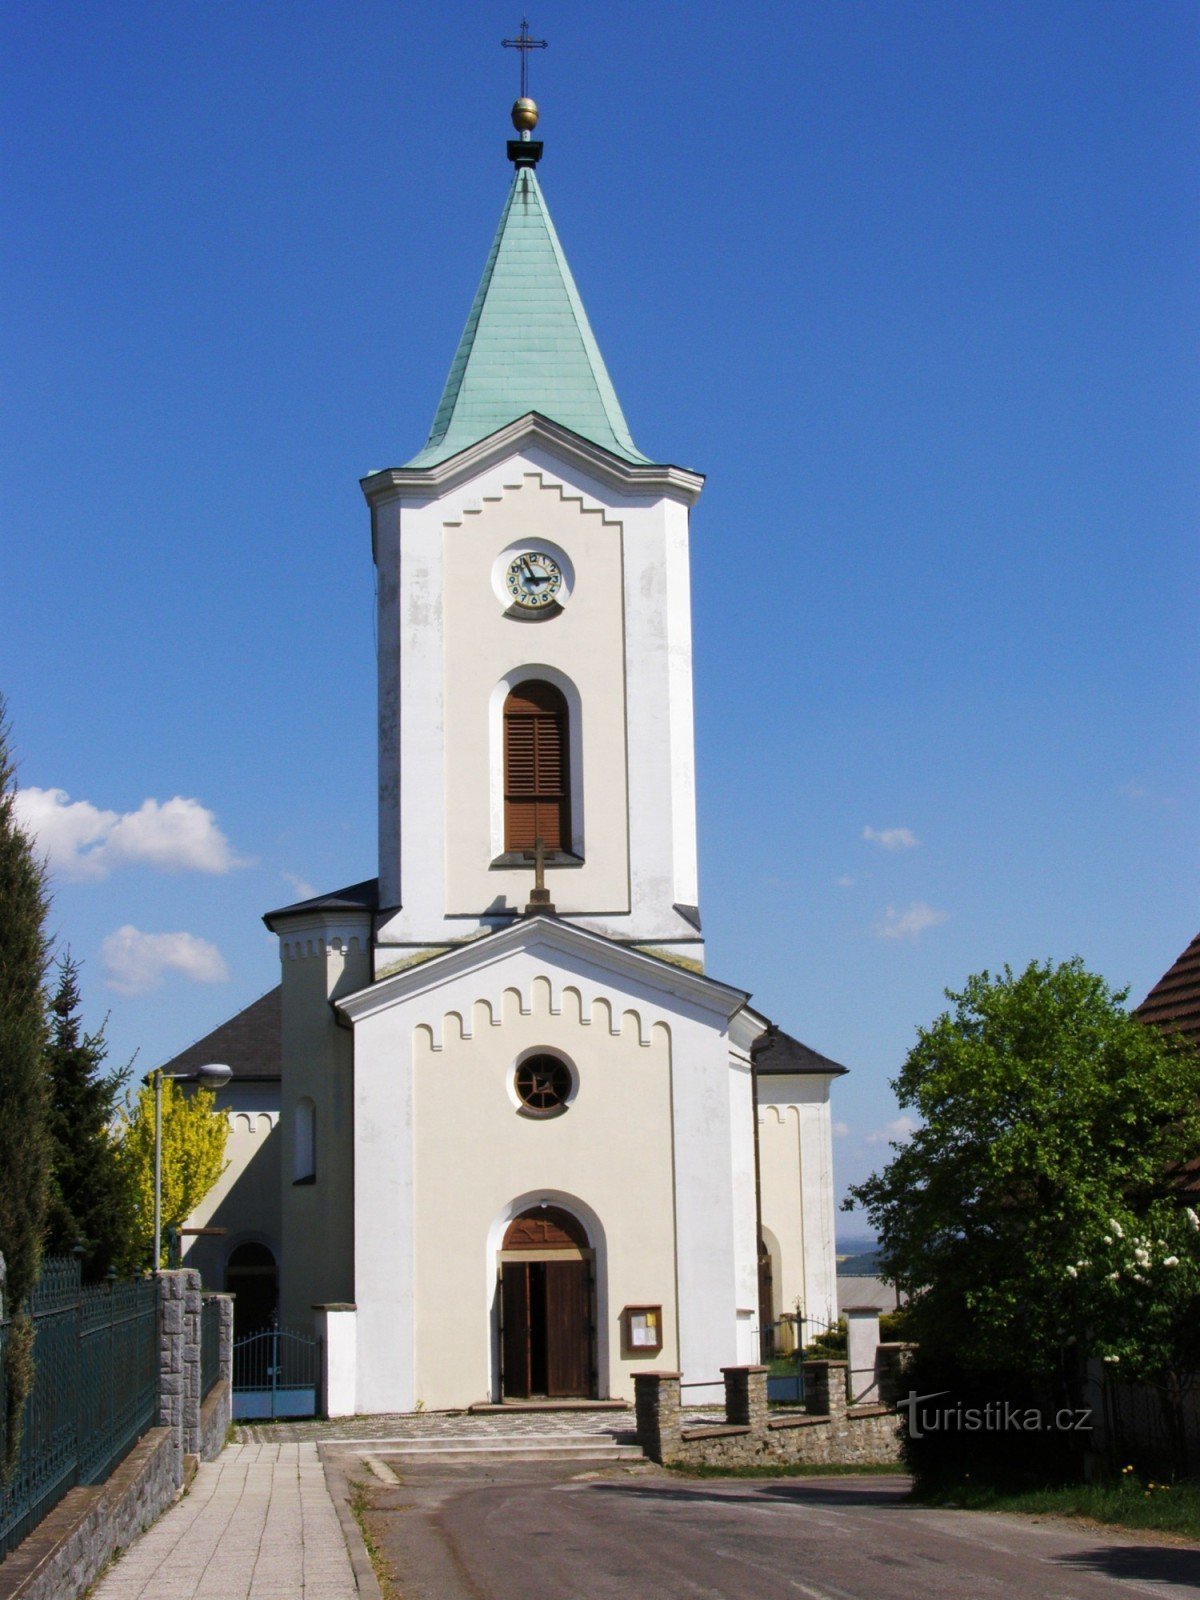 Voděrady - biserica Sf. Petru și Pavel